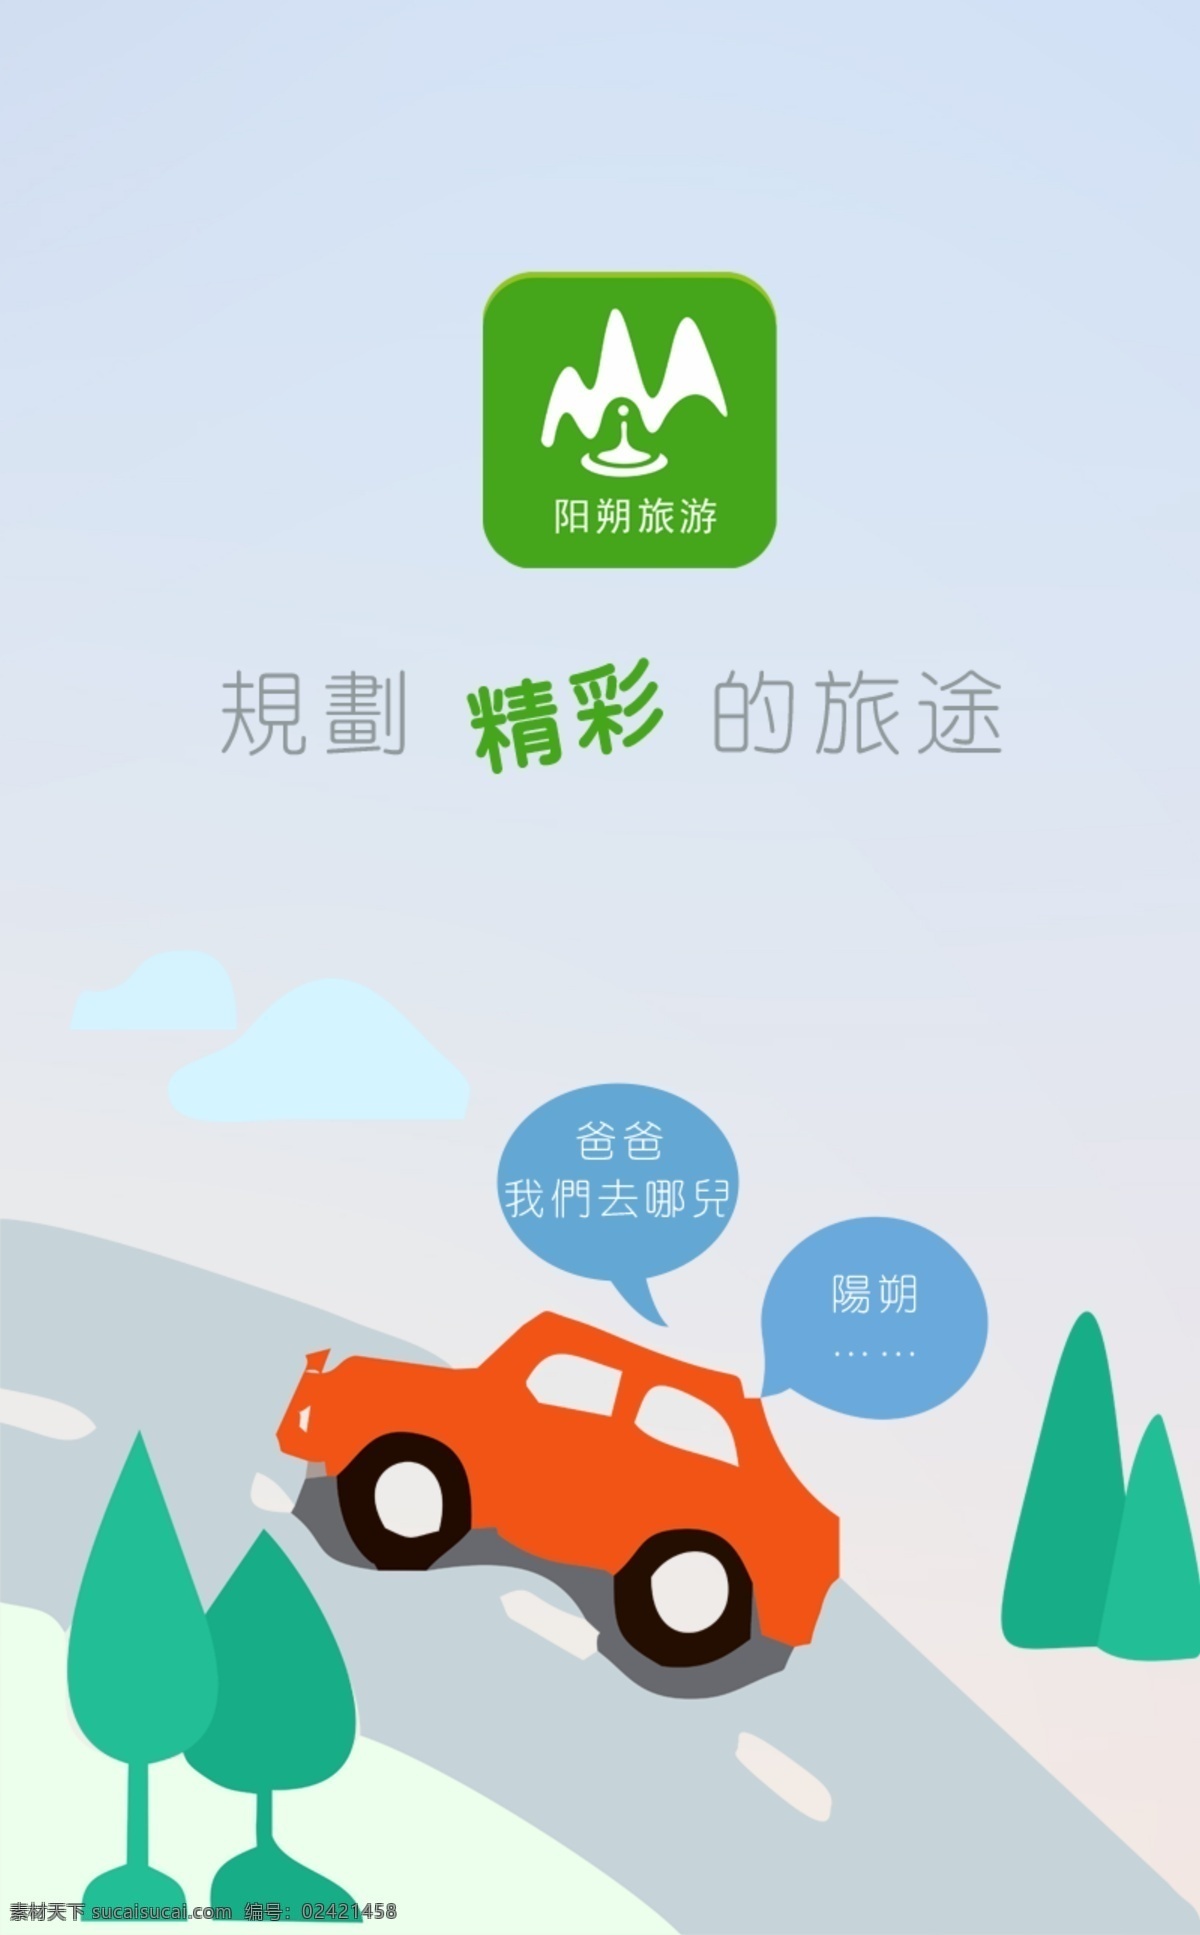 旅行 app 界面 卡通 小汽车 旅游海报设计 白色